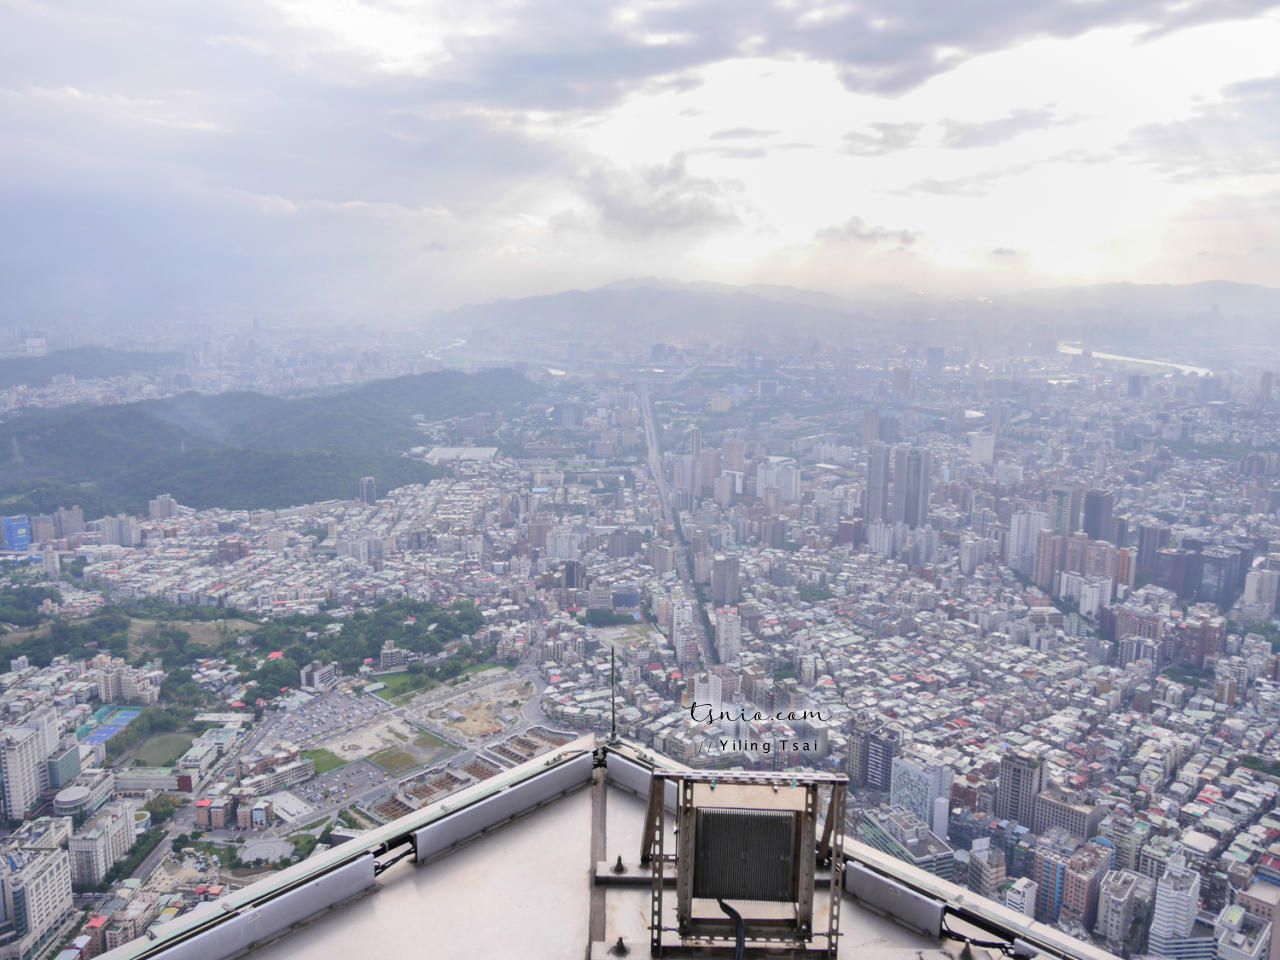 台北 101 觀景台 Skyline 460天際線雲端漫步體驗